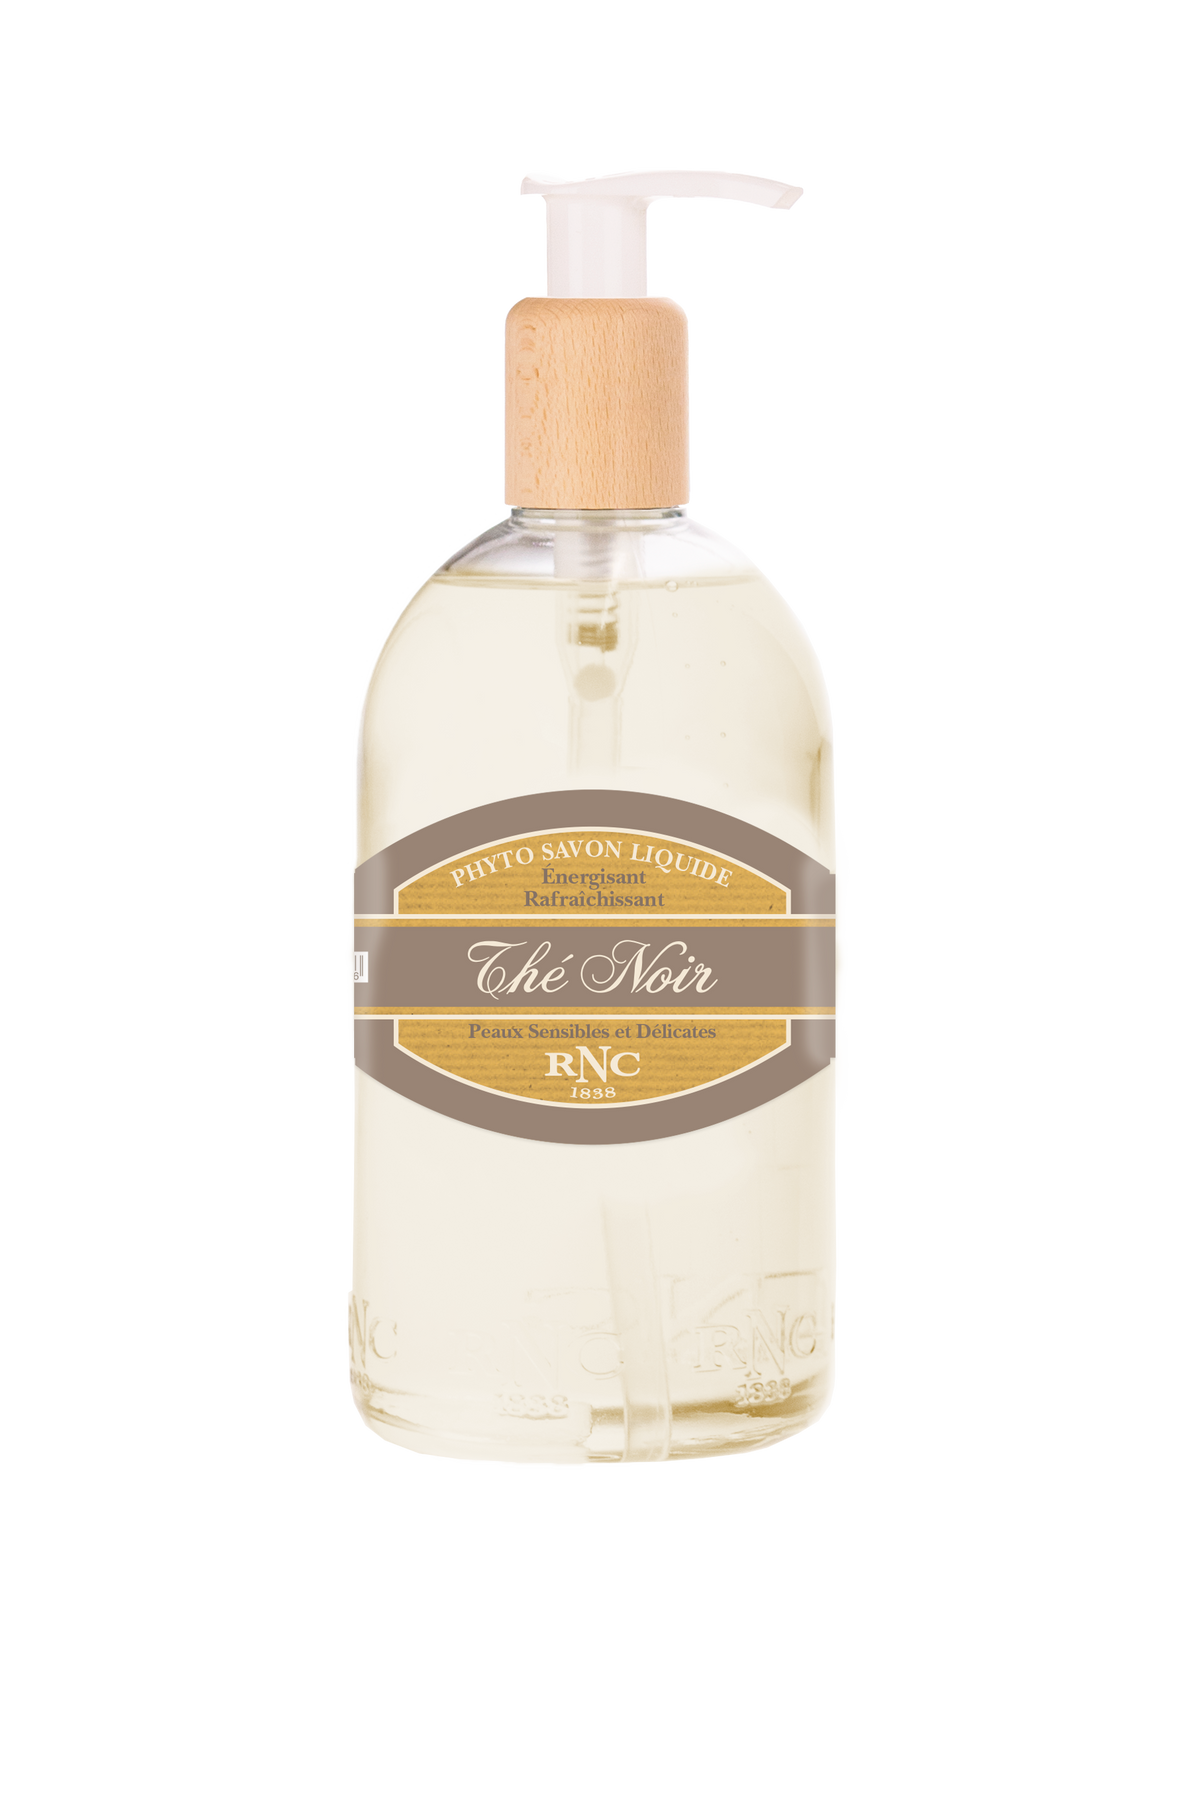 A transparent bottle of Rancé Liquid Soap - The Noir (Black Tea) hand soap with a pump dispenser, labeled "phyto savon liquide rafraîchissant the noir," on a white background.